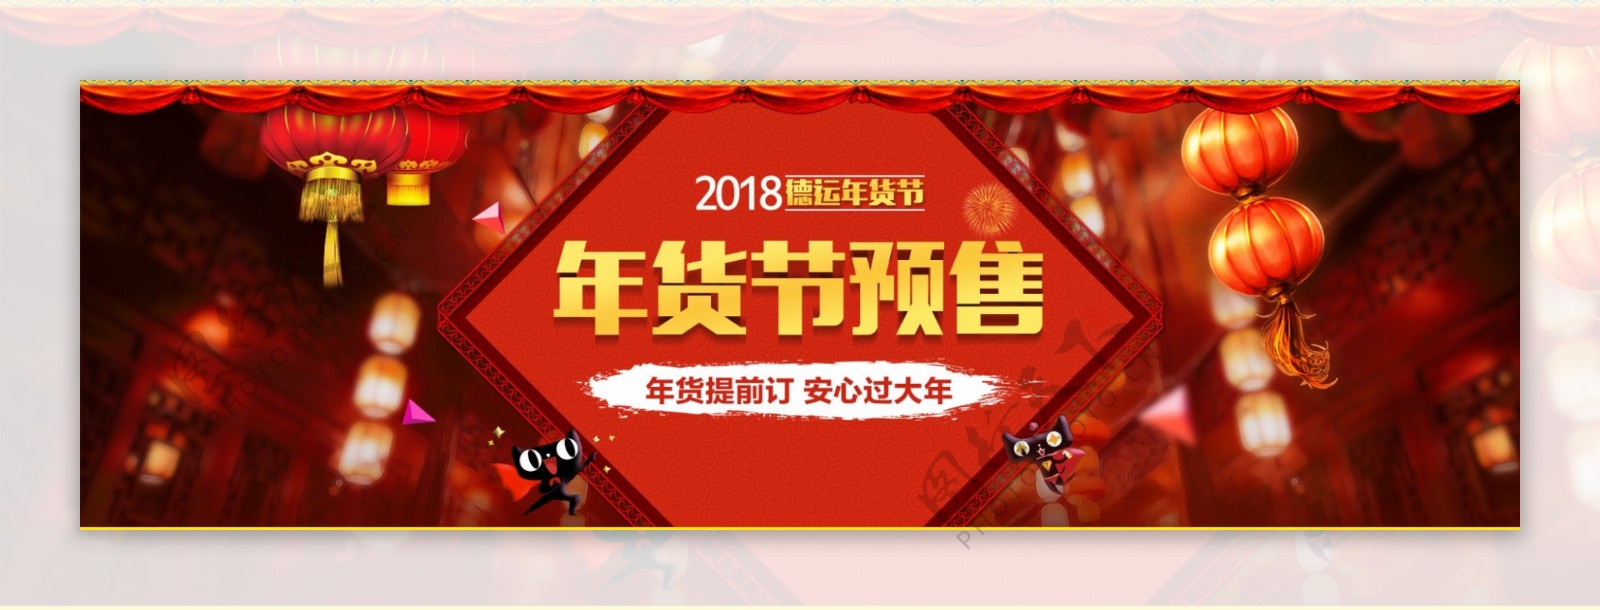 2018年货节红色灯笼海报中国结psd